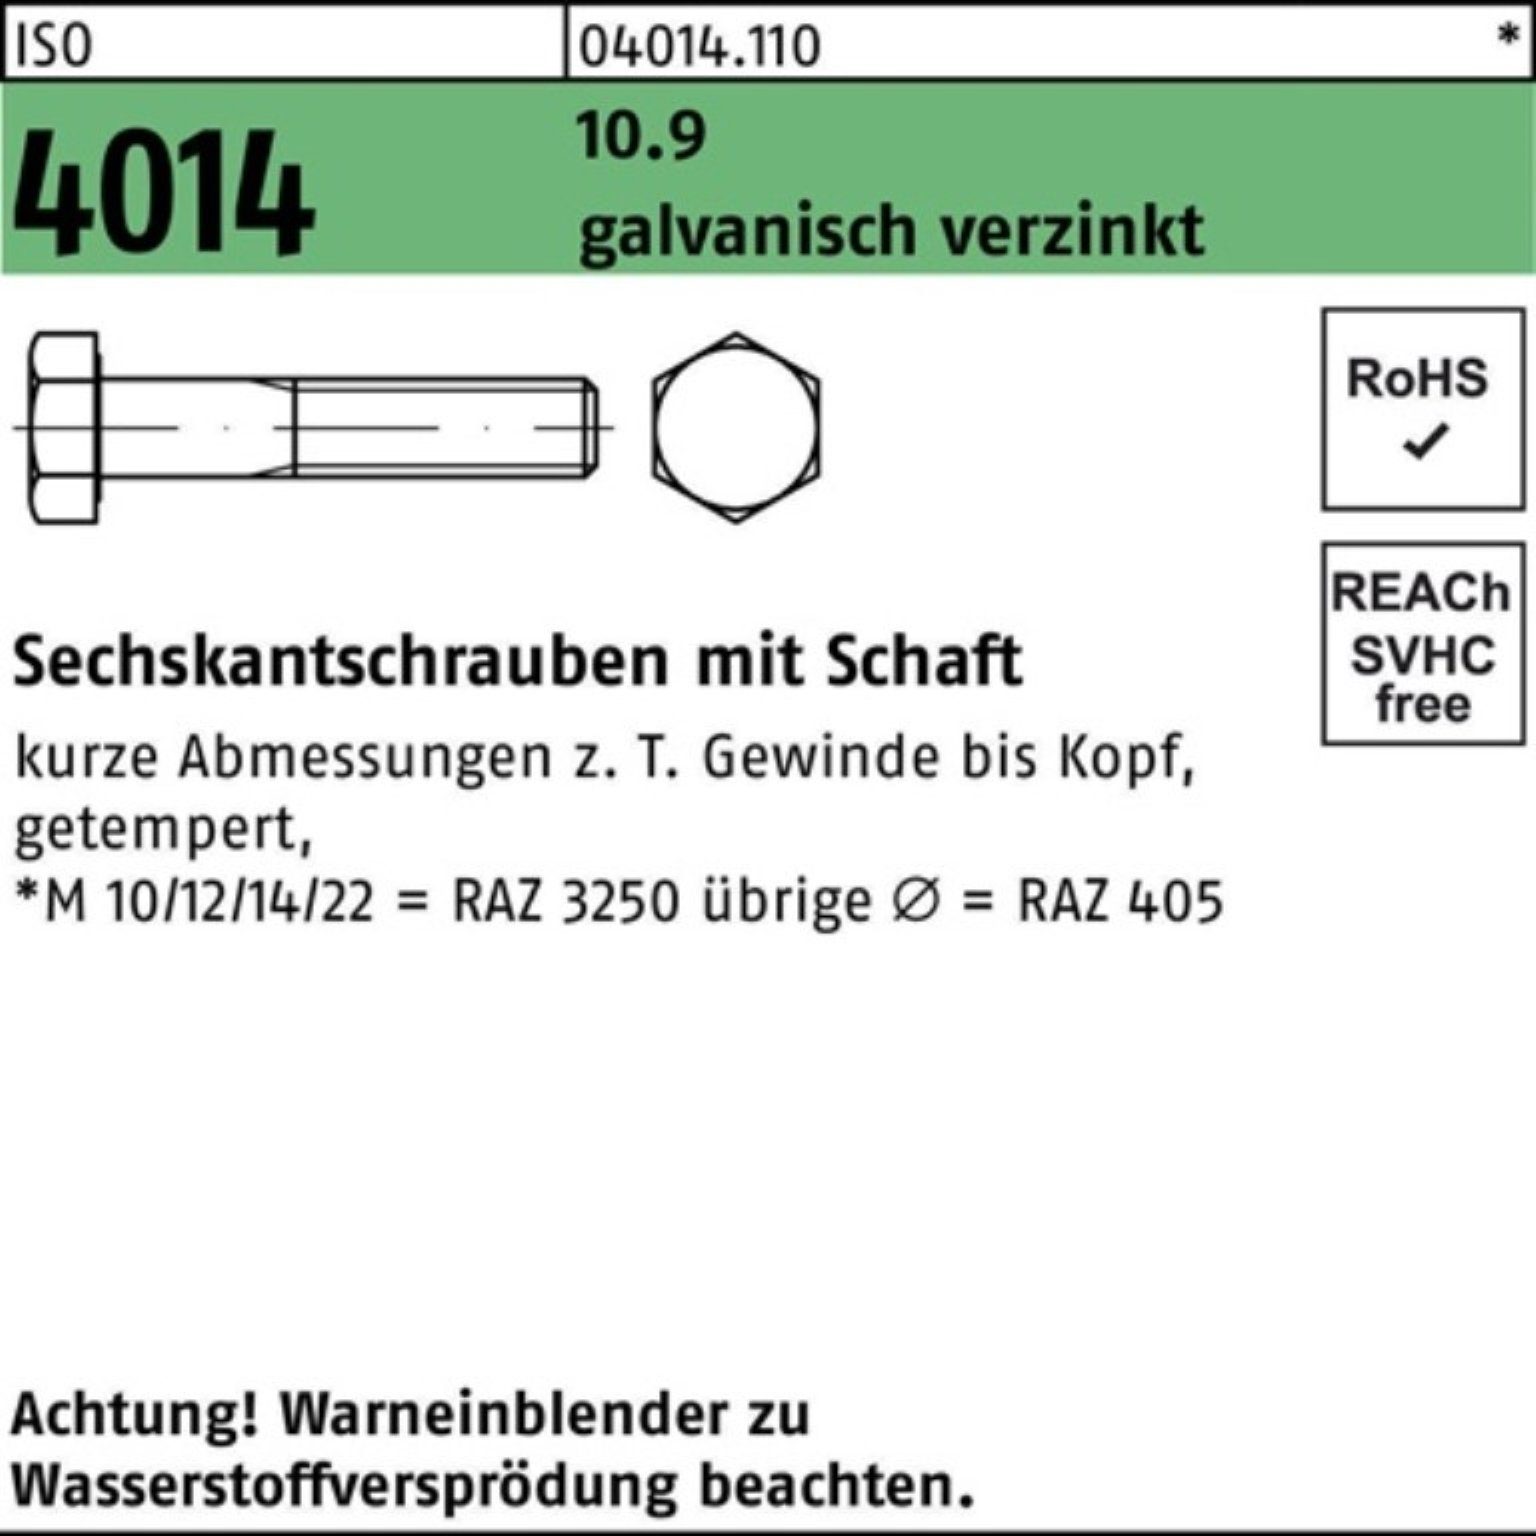 Schaft Pack Sechskantschraube Bufab galv.verz. 170 100er 4014 10.9 ISO M12x Sechskantschraube